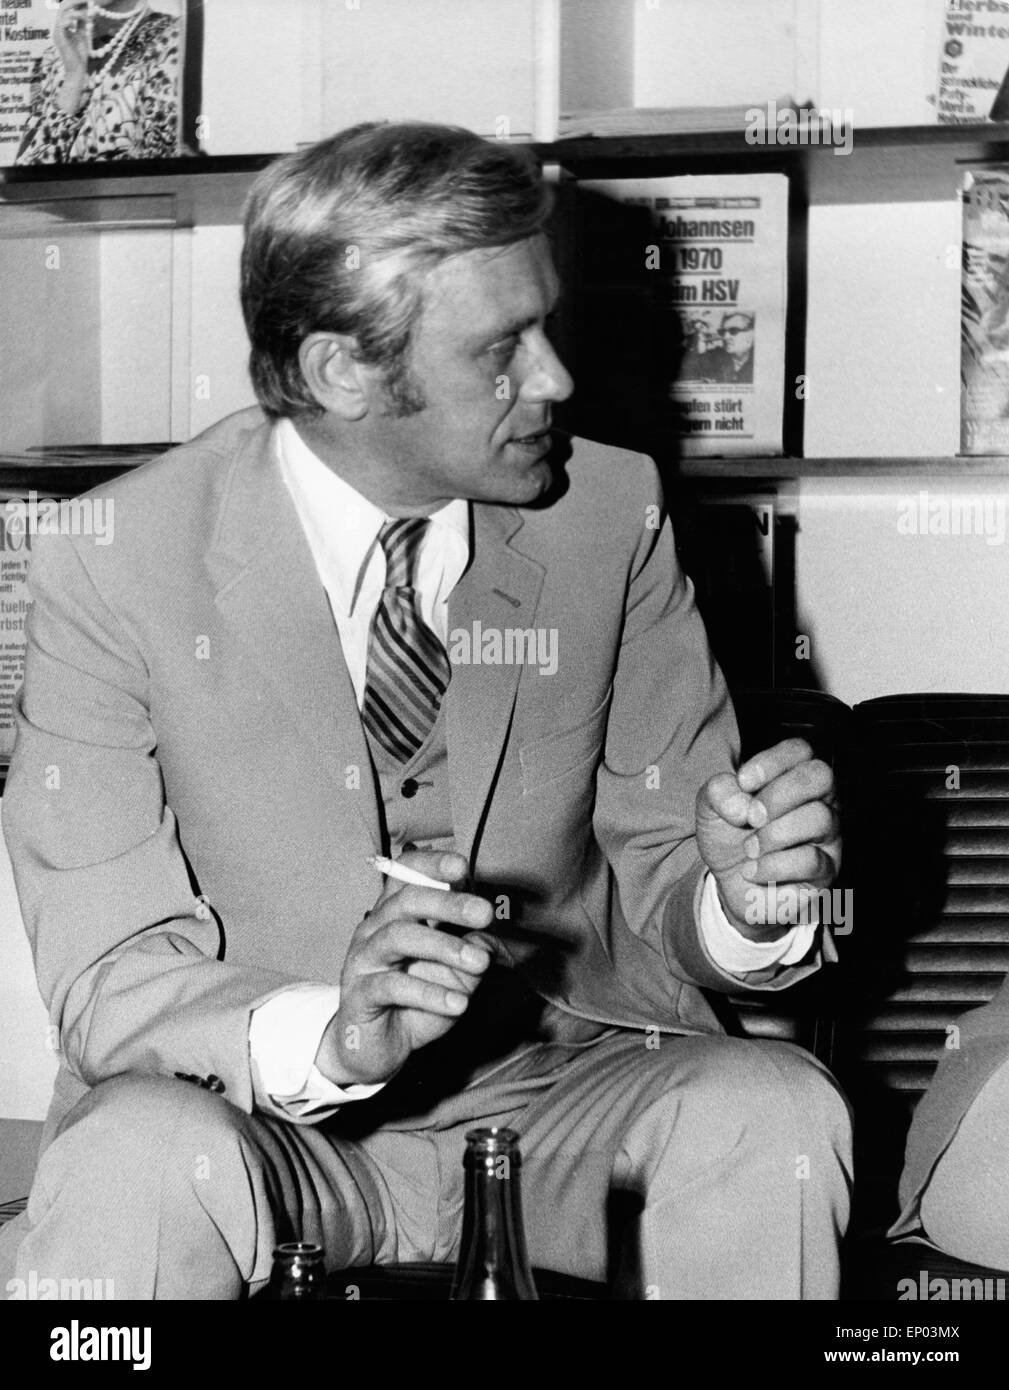 Der Schauspieler Horst Frank im Gespräch, Ende 1960er Jahre. Stock Photo